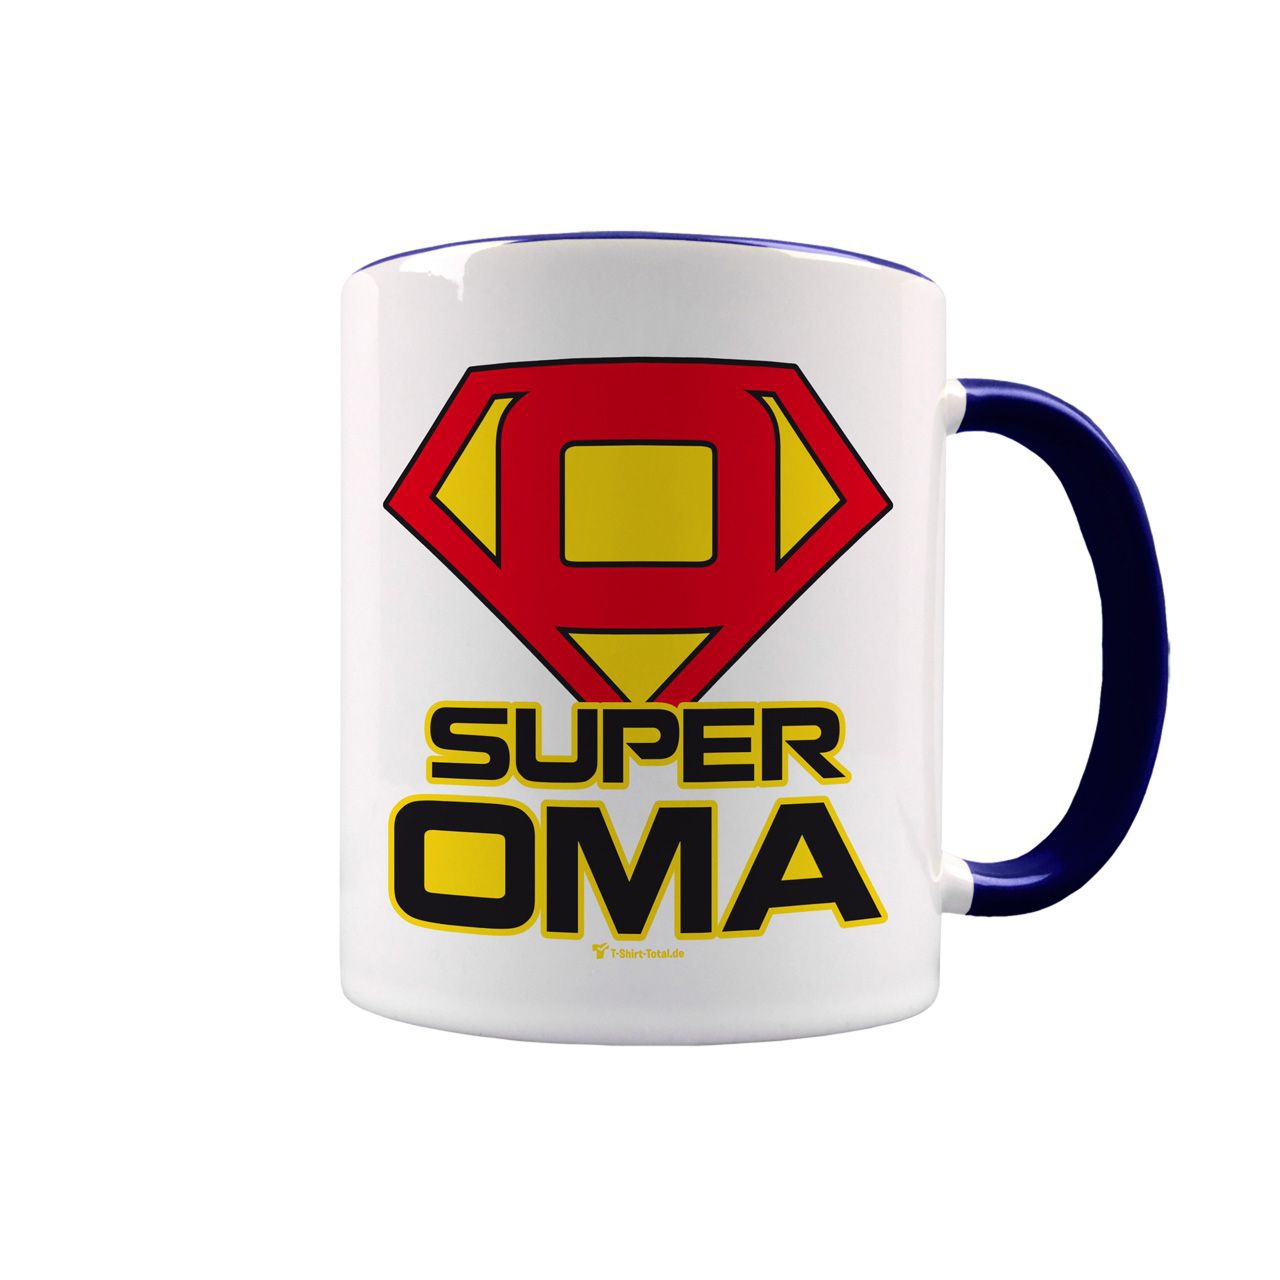 Super Oma Tasse navy / weiß